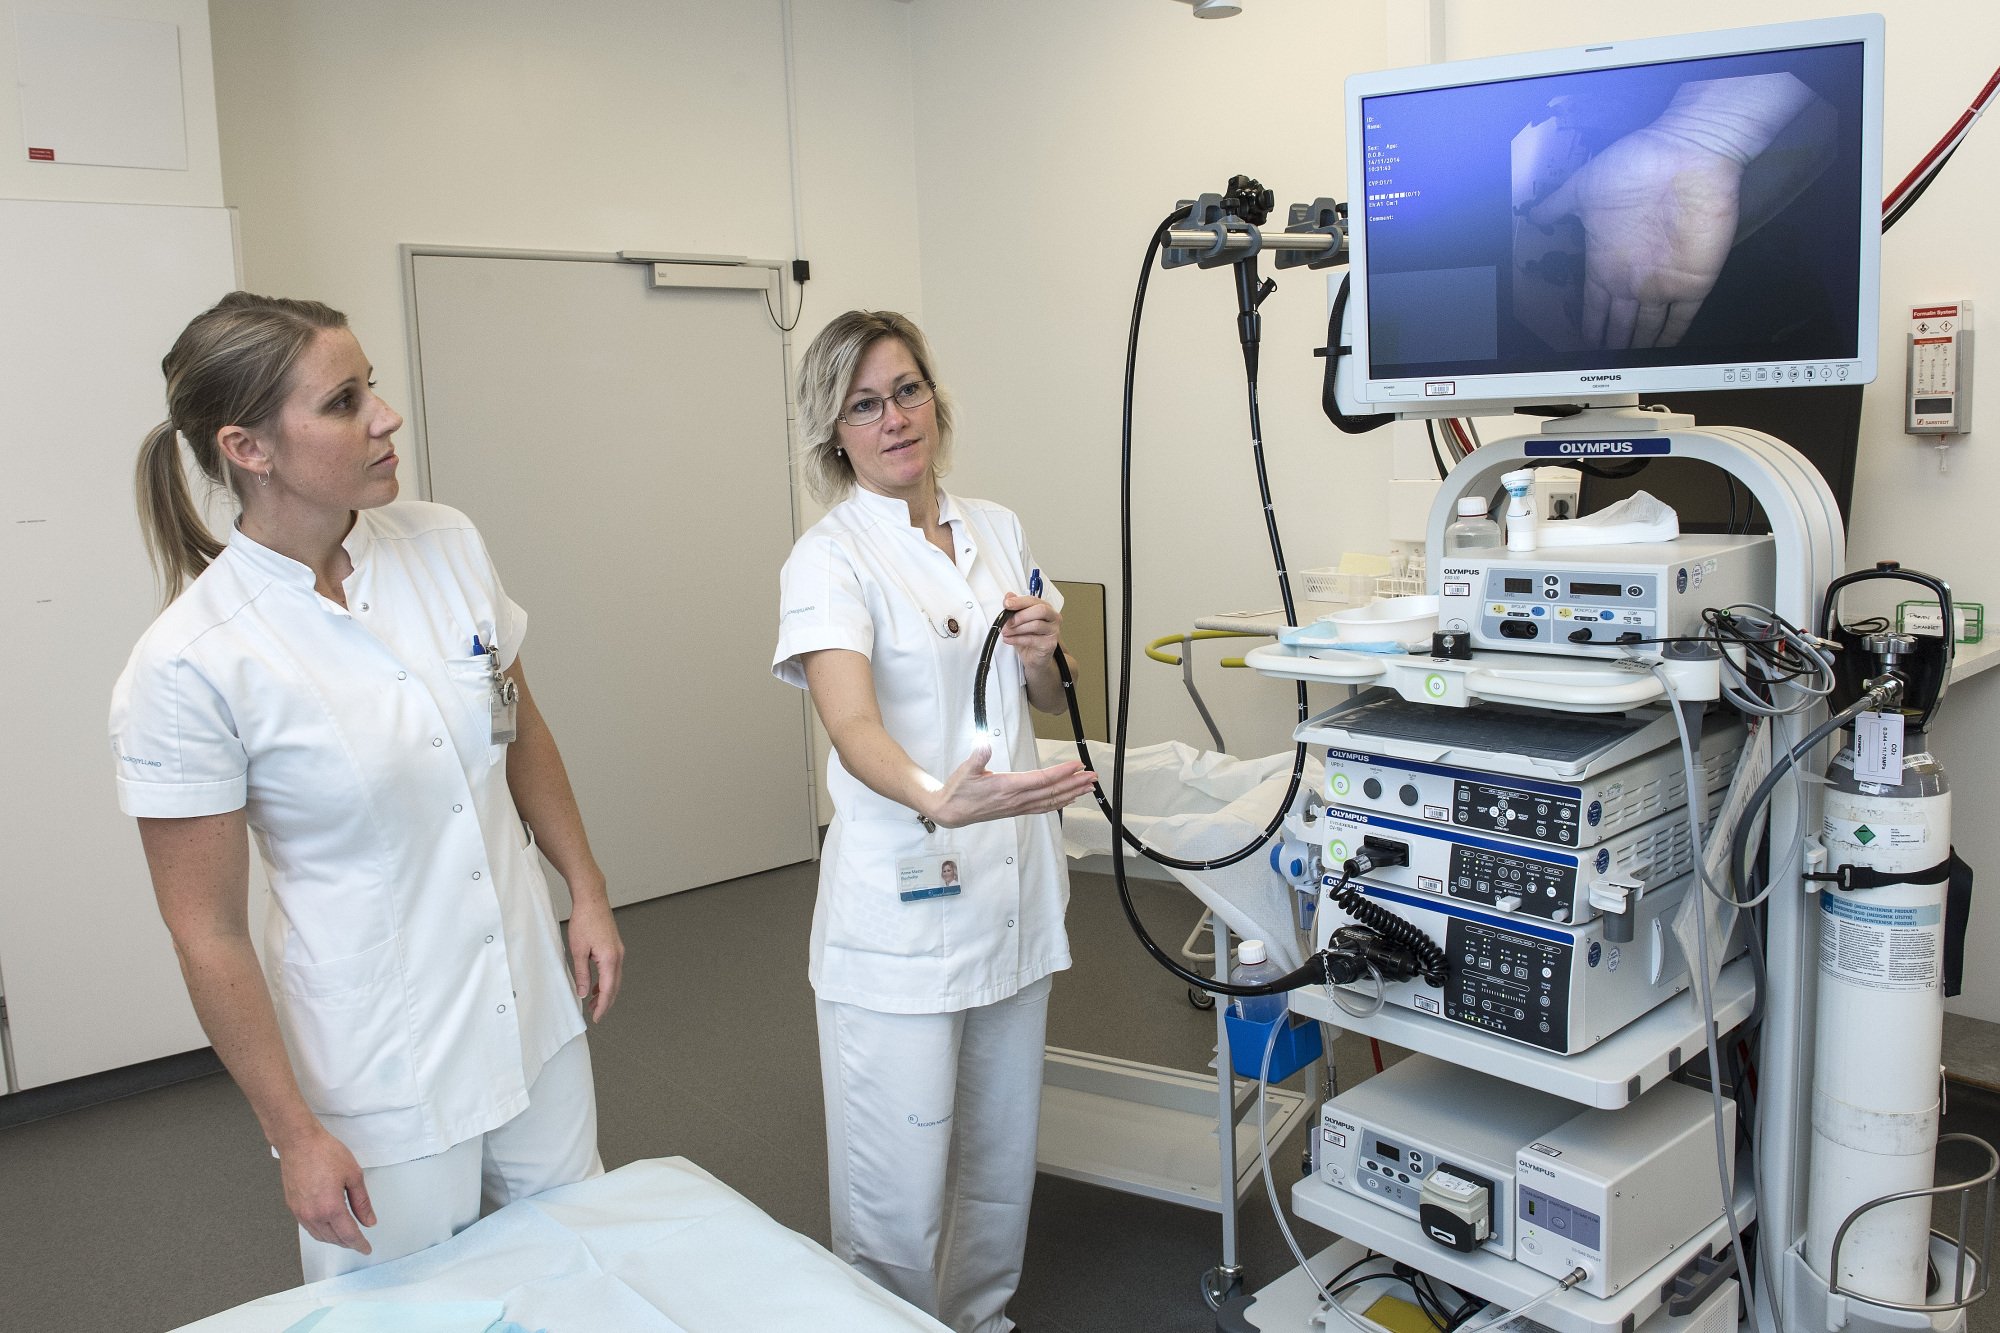 Tvivlsomme resultater på nordjyske hospitaler: Direktør frygter oversete kræftsvulster